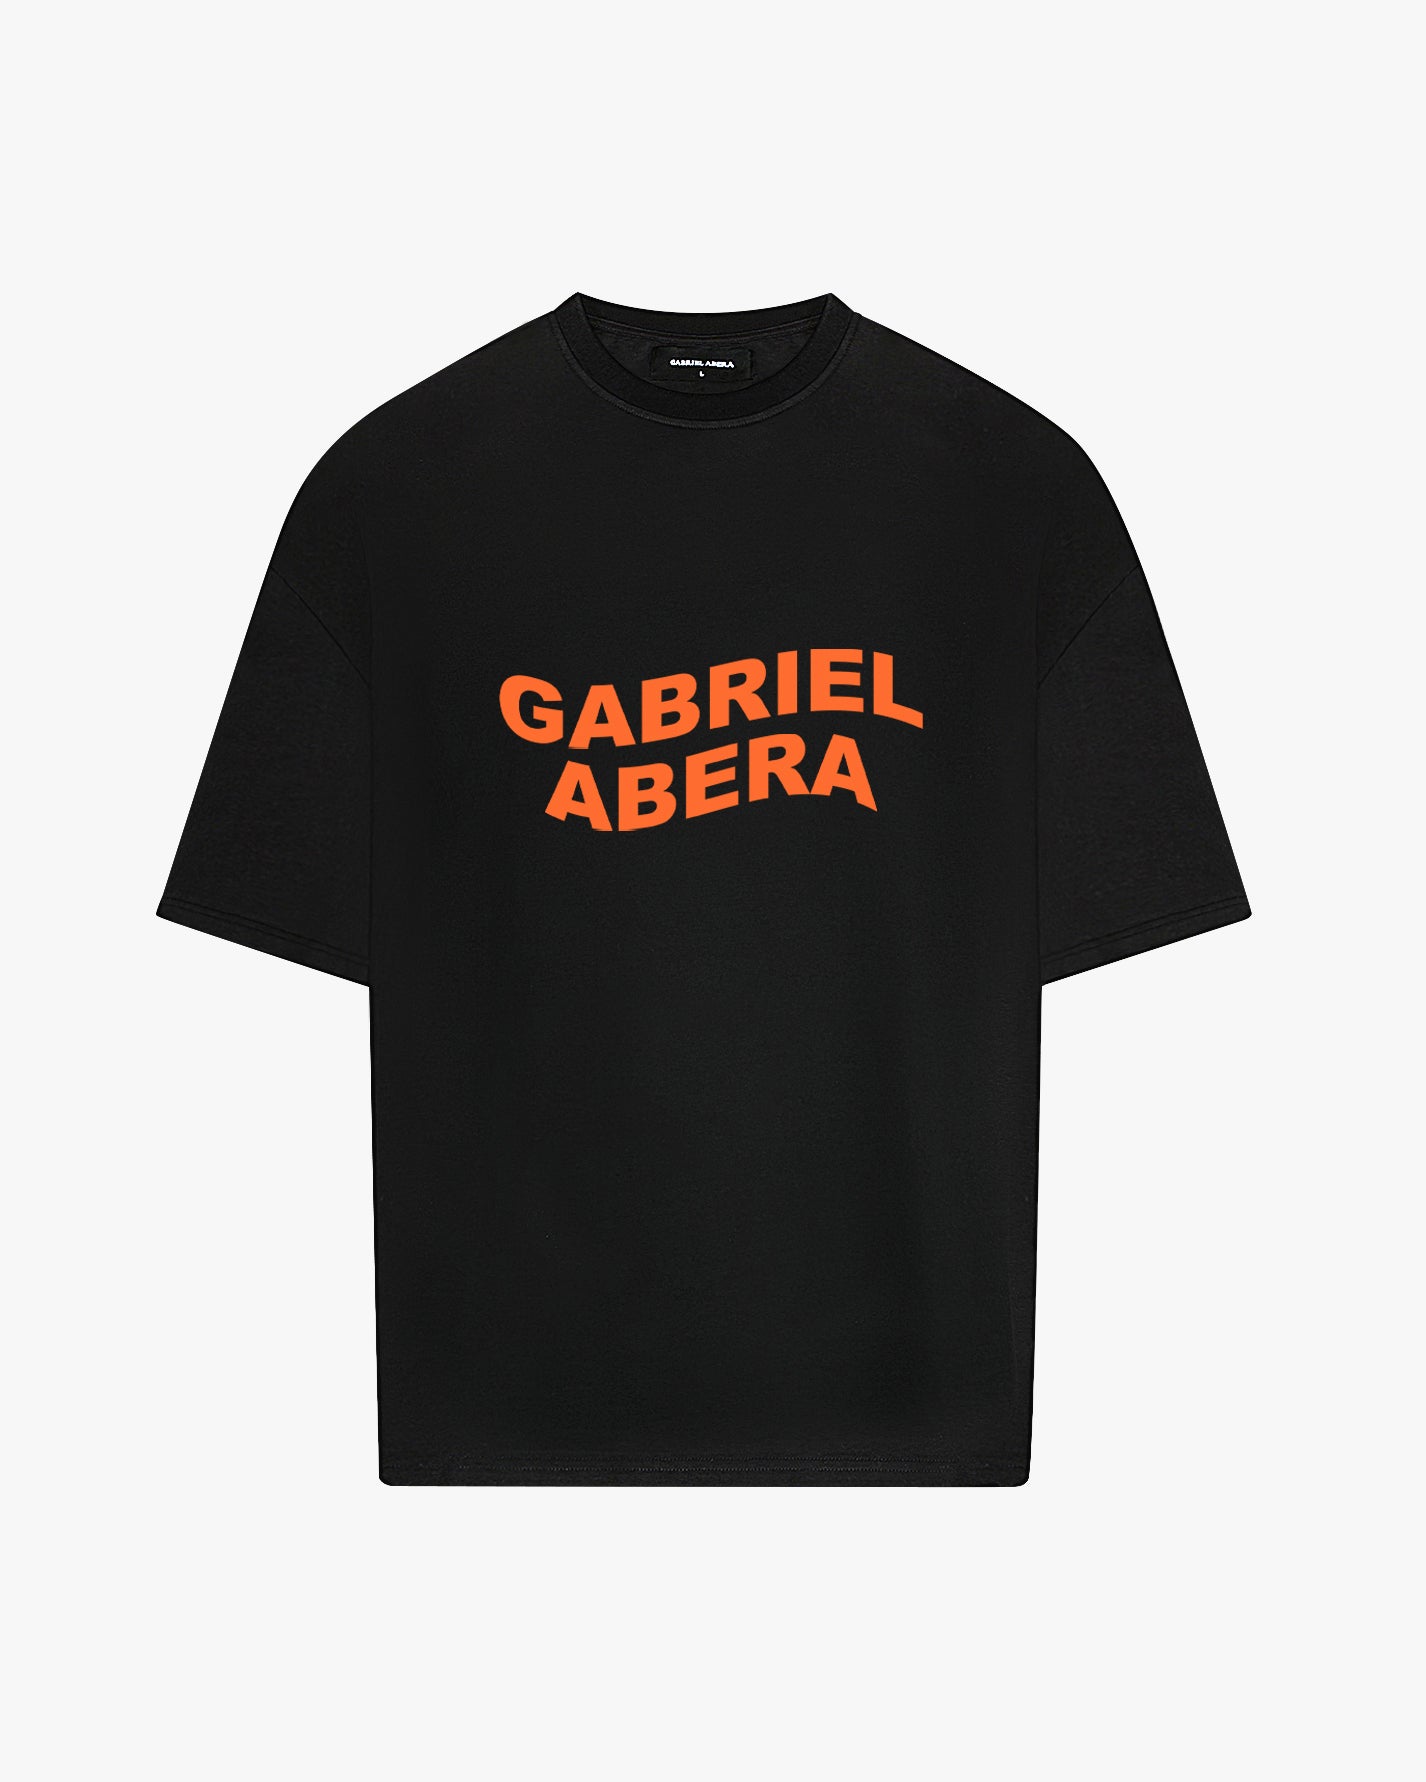 black oversie tshirt with orange wavy brand name design